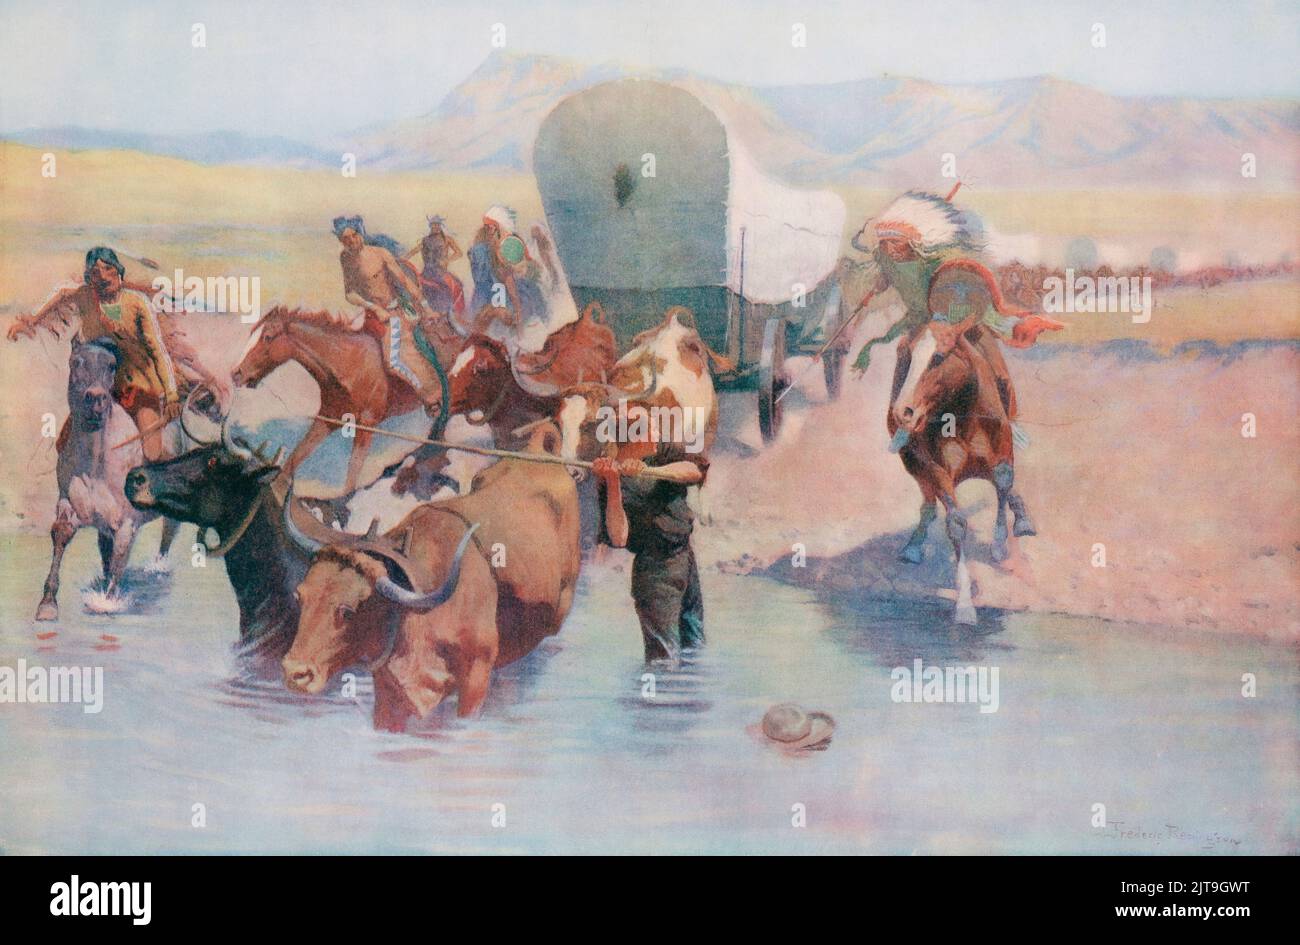 Die Emigranten. Nach einem Werk des amerikanischen Künstlers Frederic Sackrider Remington, 1861 – 1909. Ein Wagenzug wird von Indianern angegriffen, als er einen Fluss überquert. Stockfoto